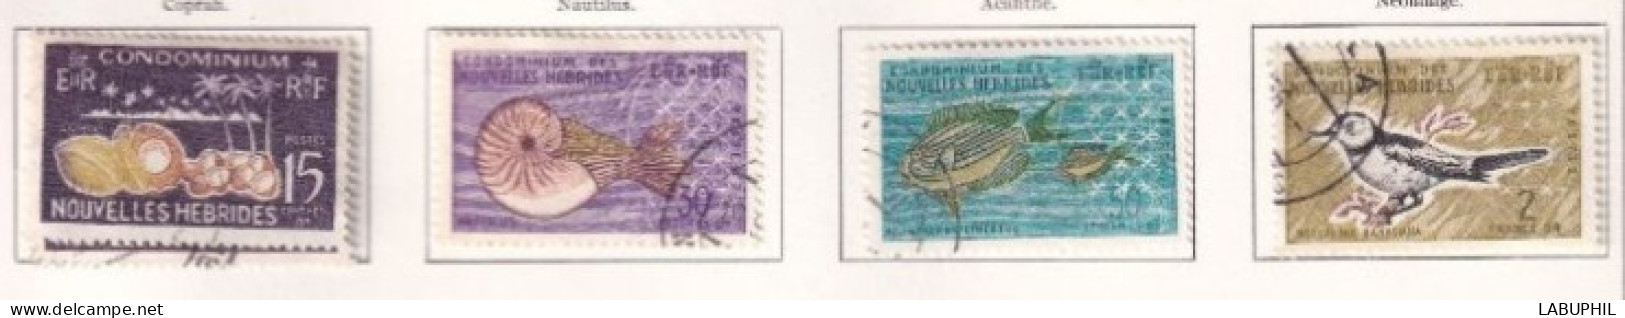 NOUVELLES HEBRIDES Dispersion D'une Collection Oblitéré Et Mlh  1963 Faune - Gebruikt